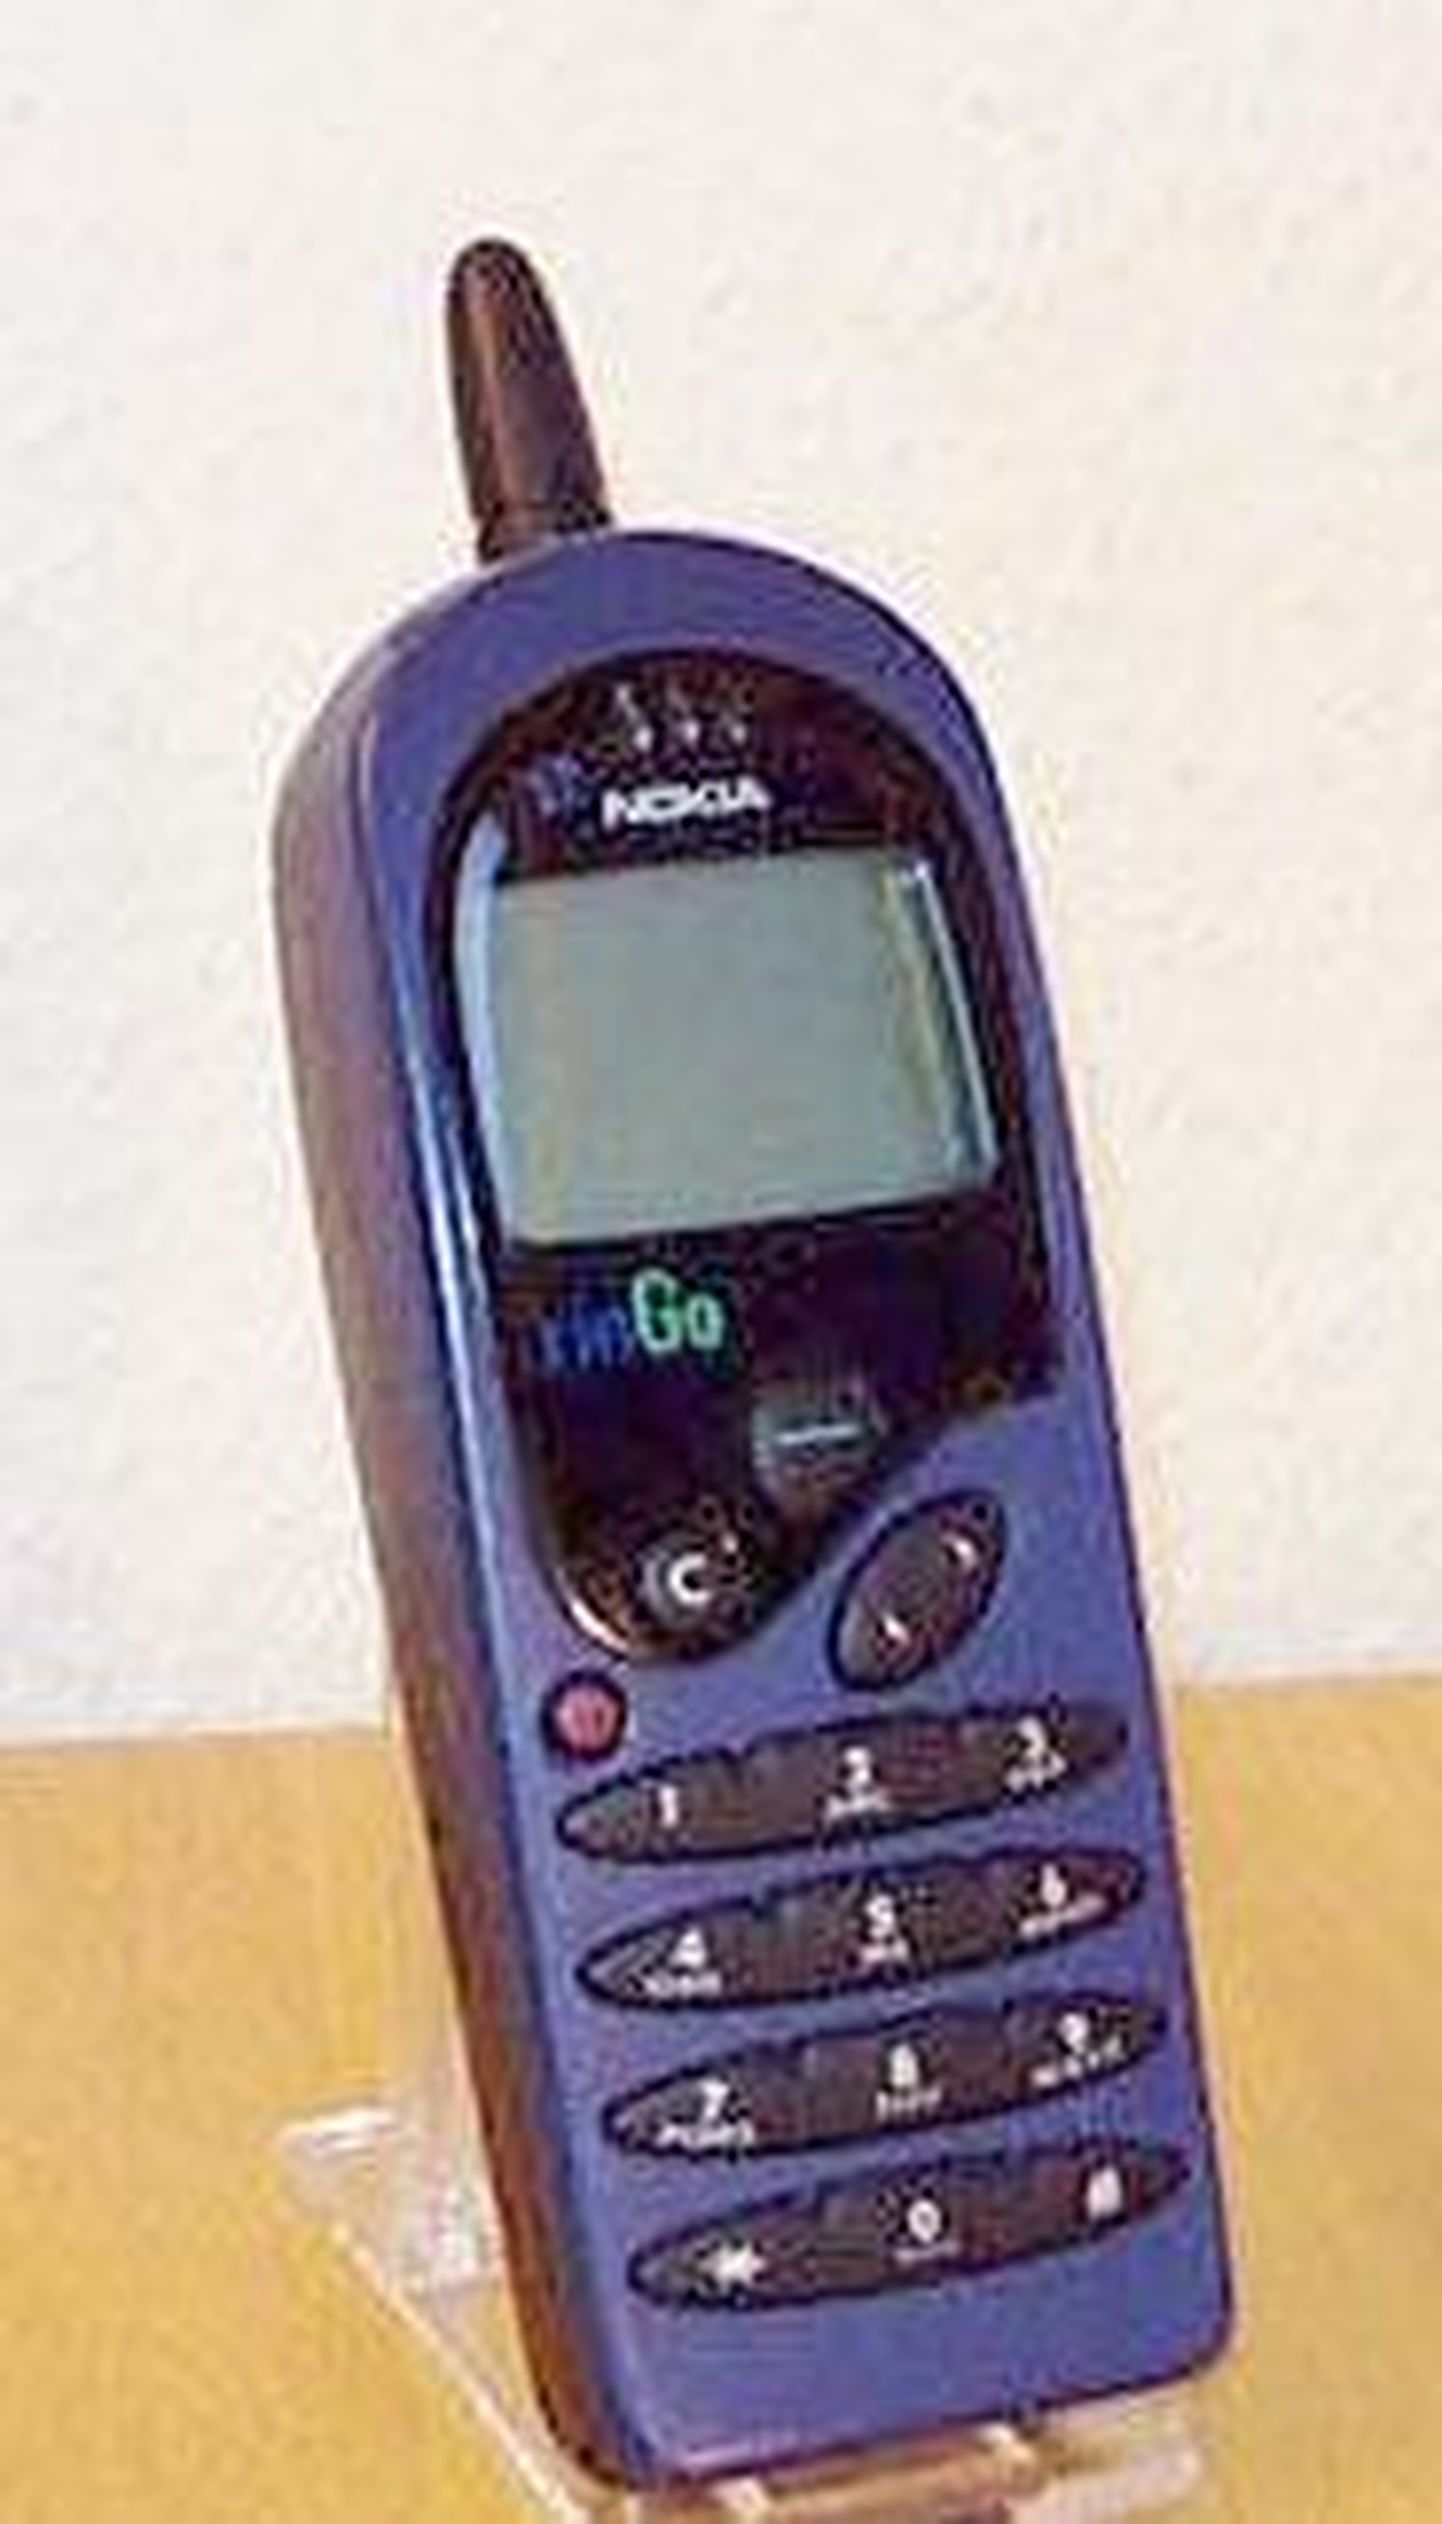 Nokia RinGo mobiiltelefon